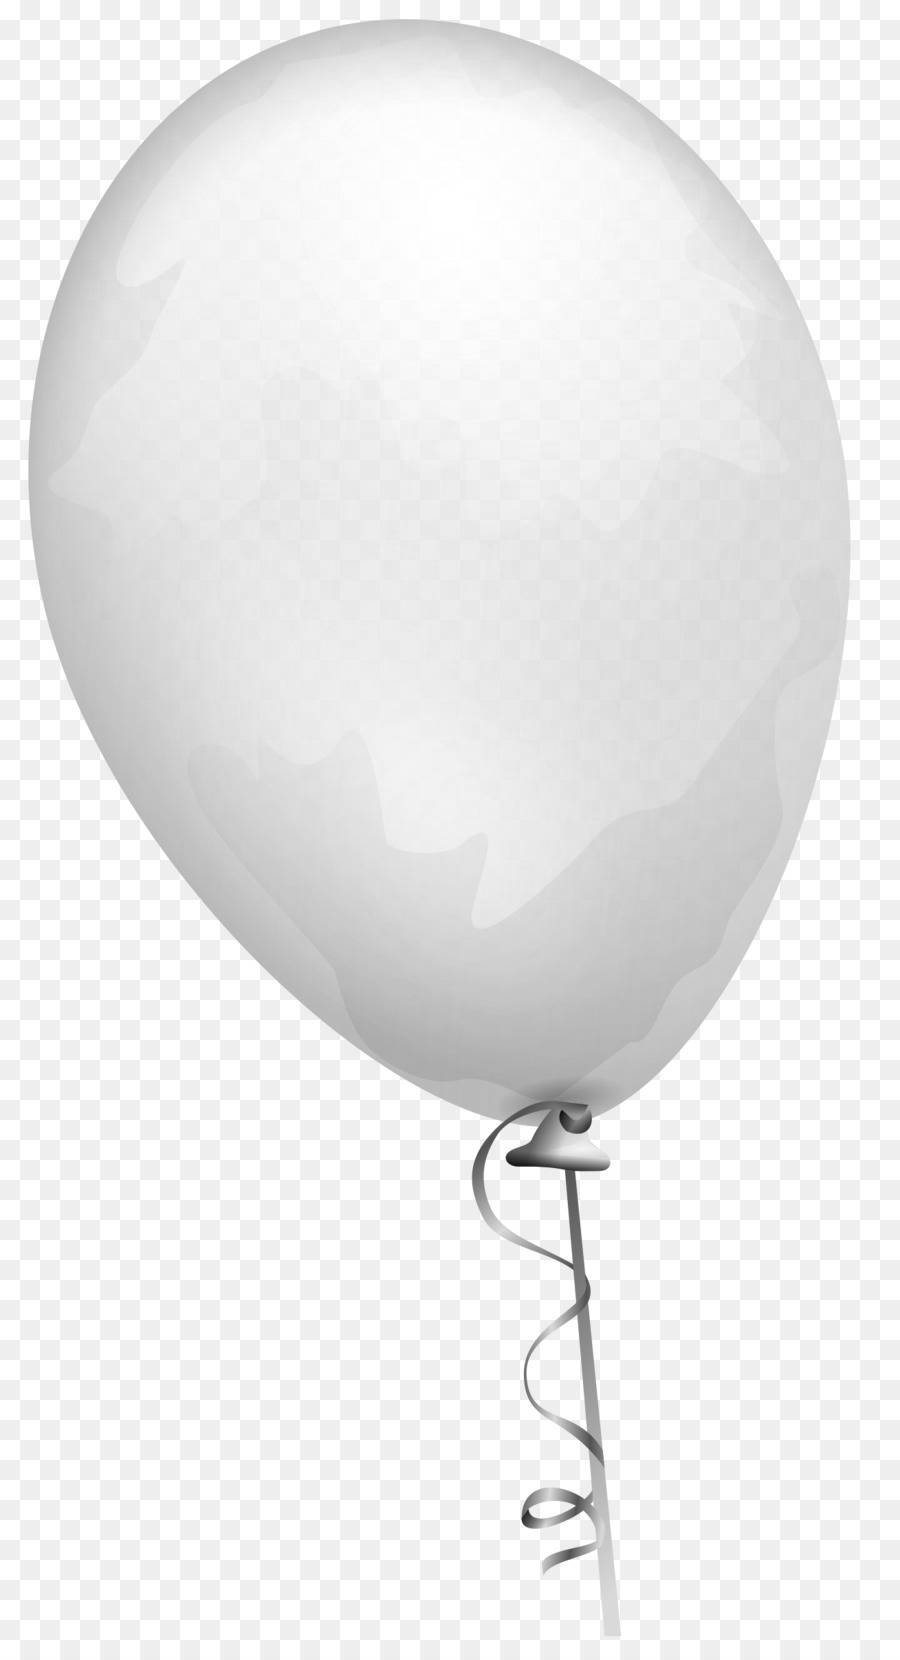 Ballon clipart - Ballon